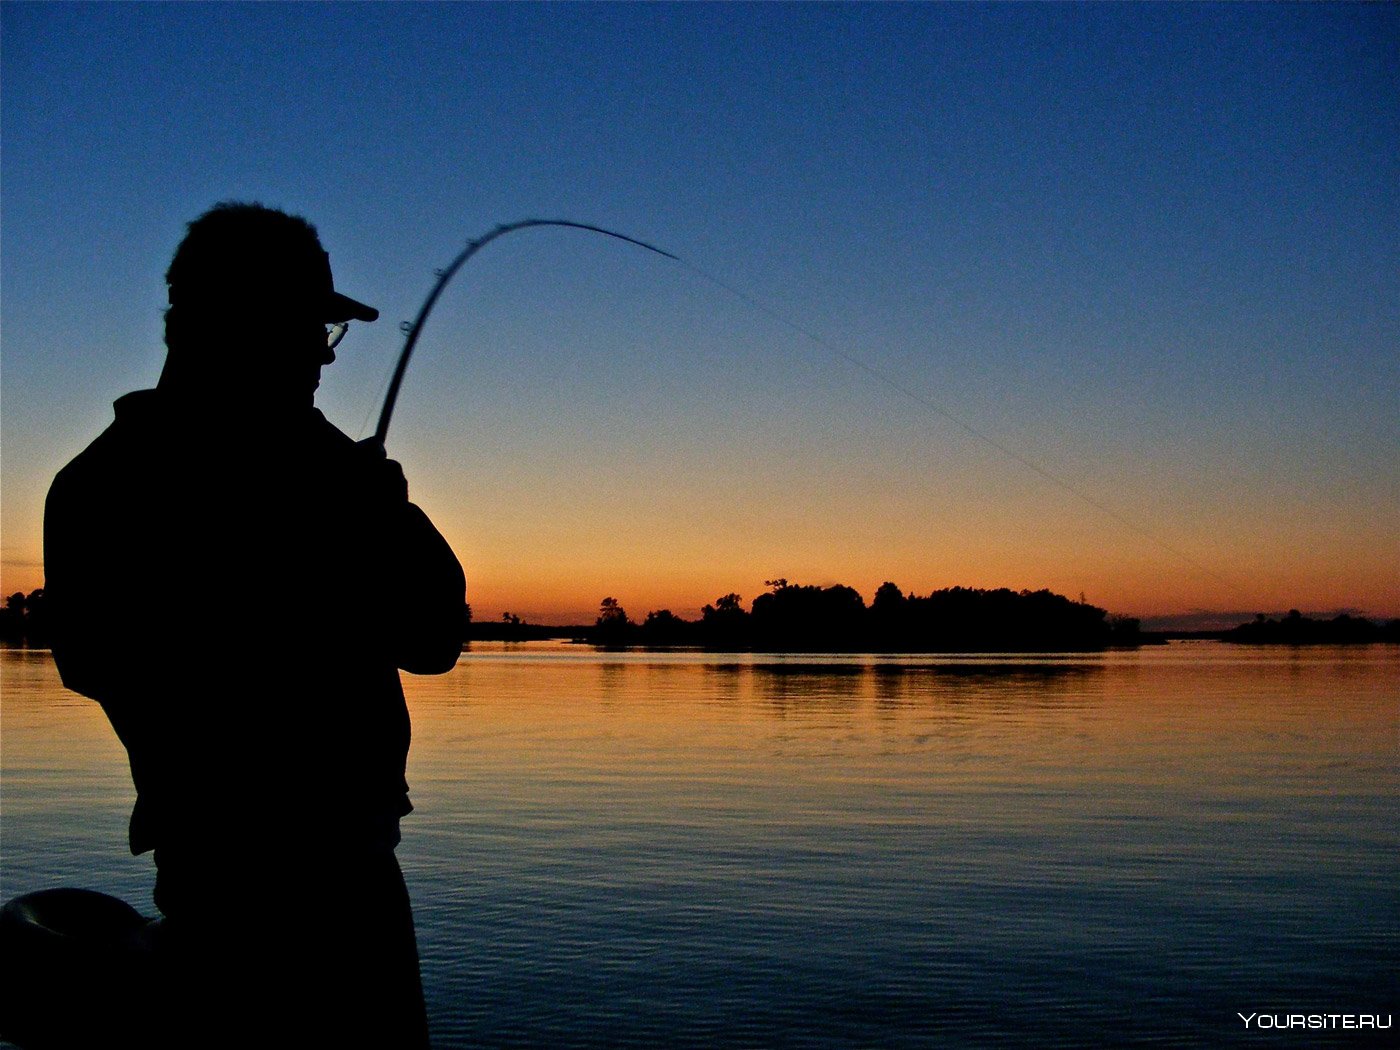 Лов удочкой. Рыбалка. Рыбак со спиннингом. Рыбак с удочкой. Ночная рыбалка.